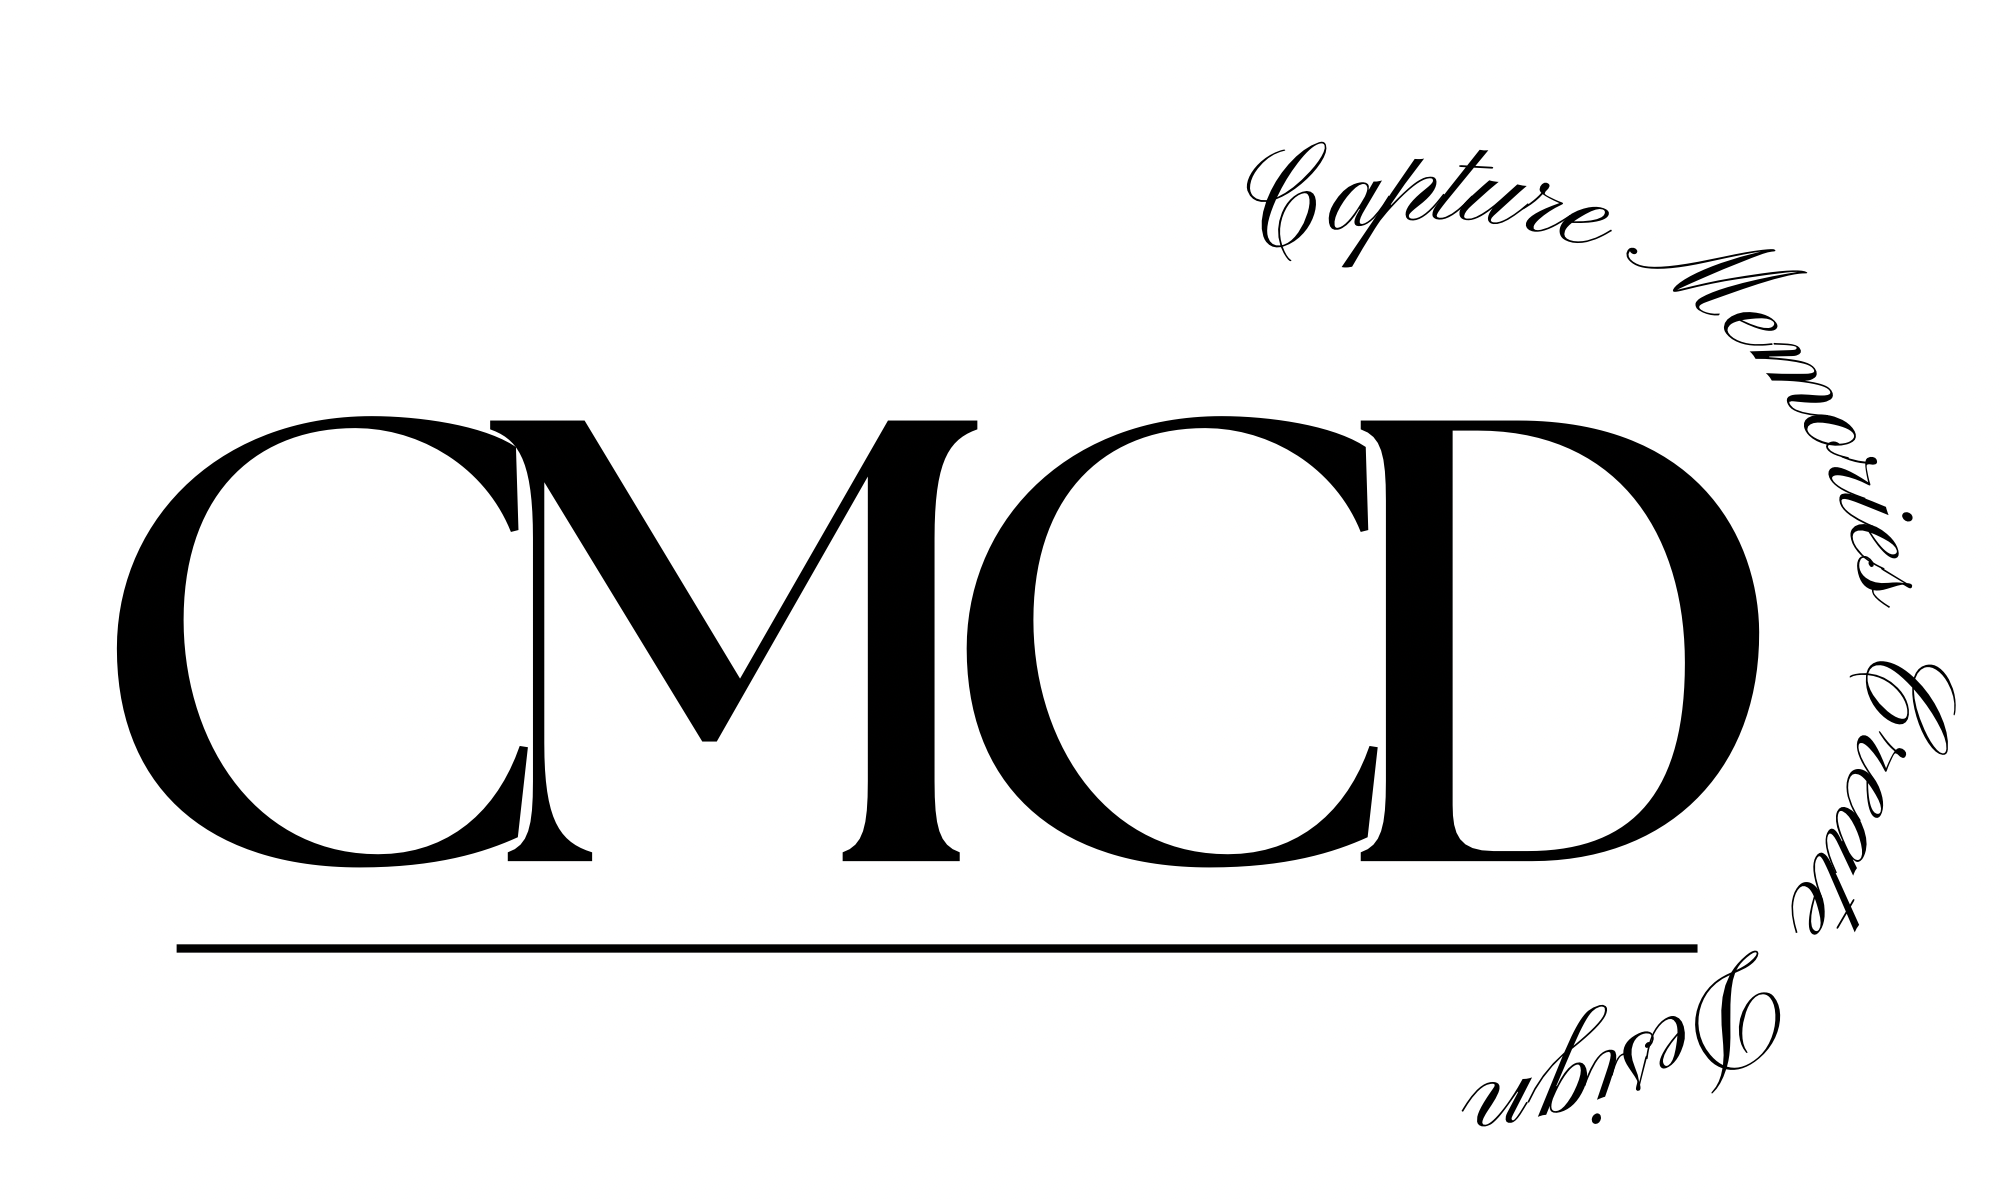 C.M.C.D. LLC 